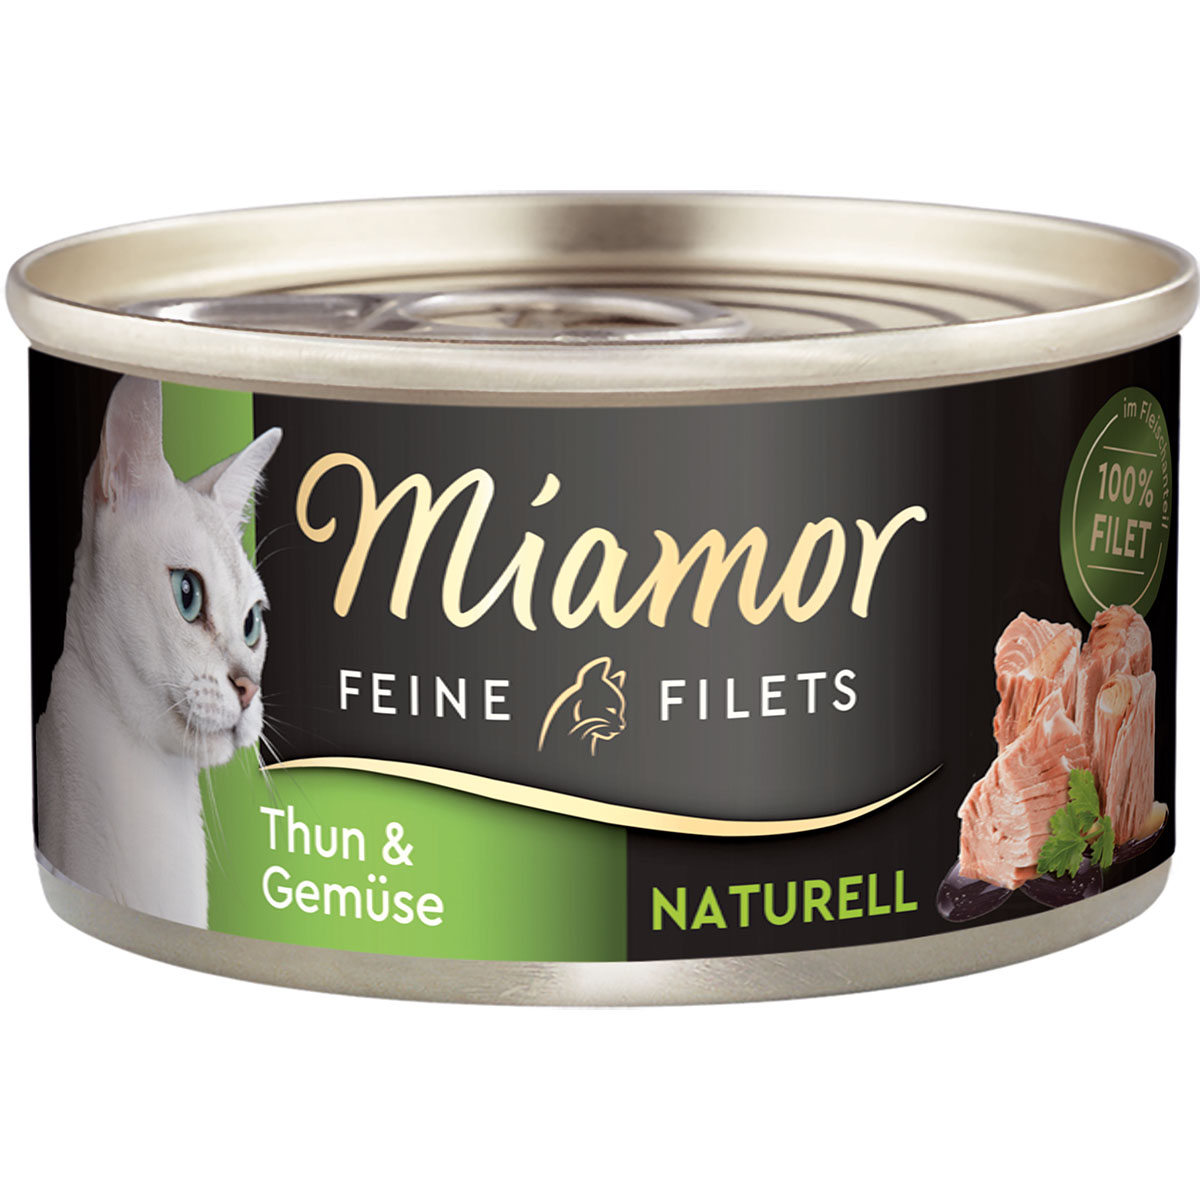 miamor feine filets naturell thunfisch und gemuse 80g